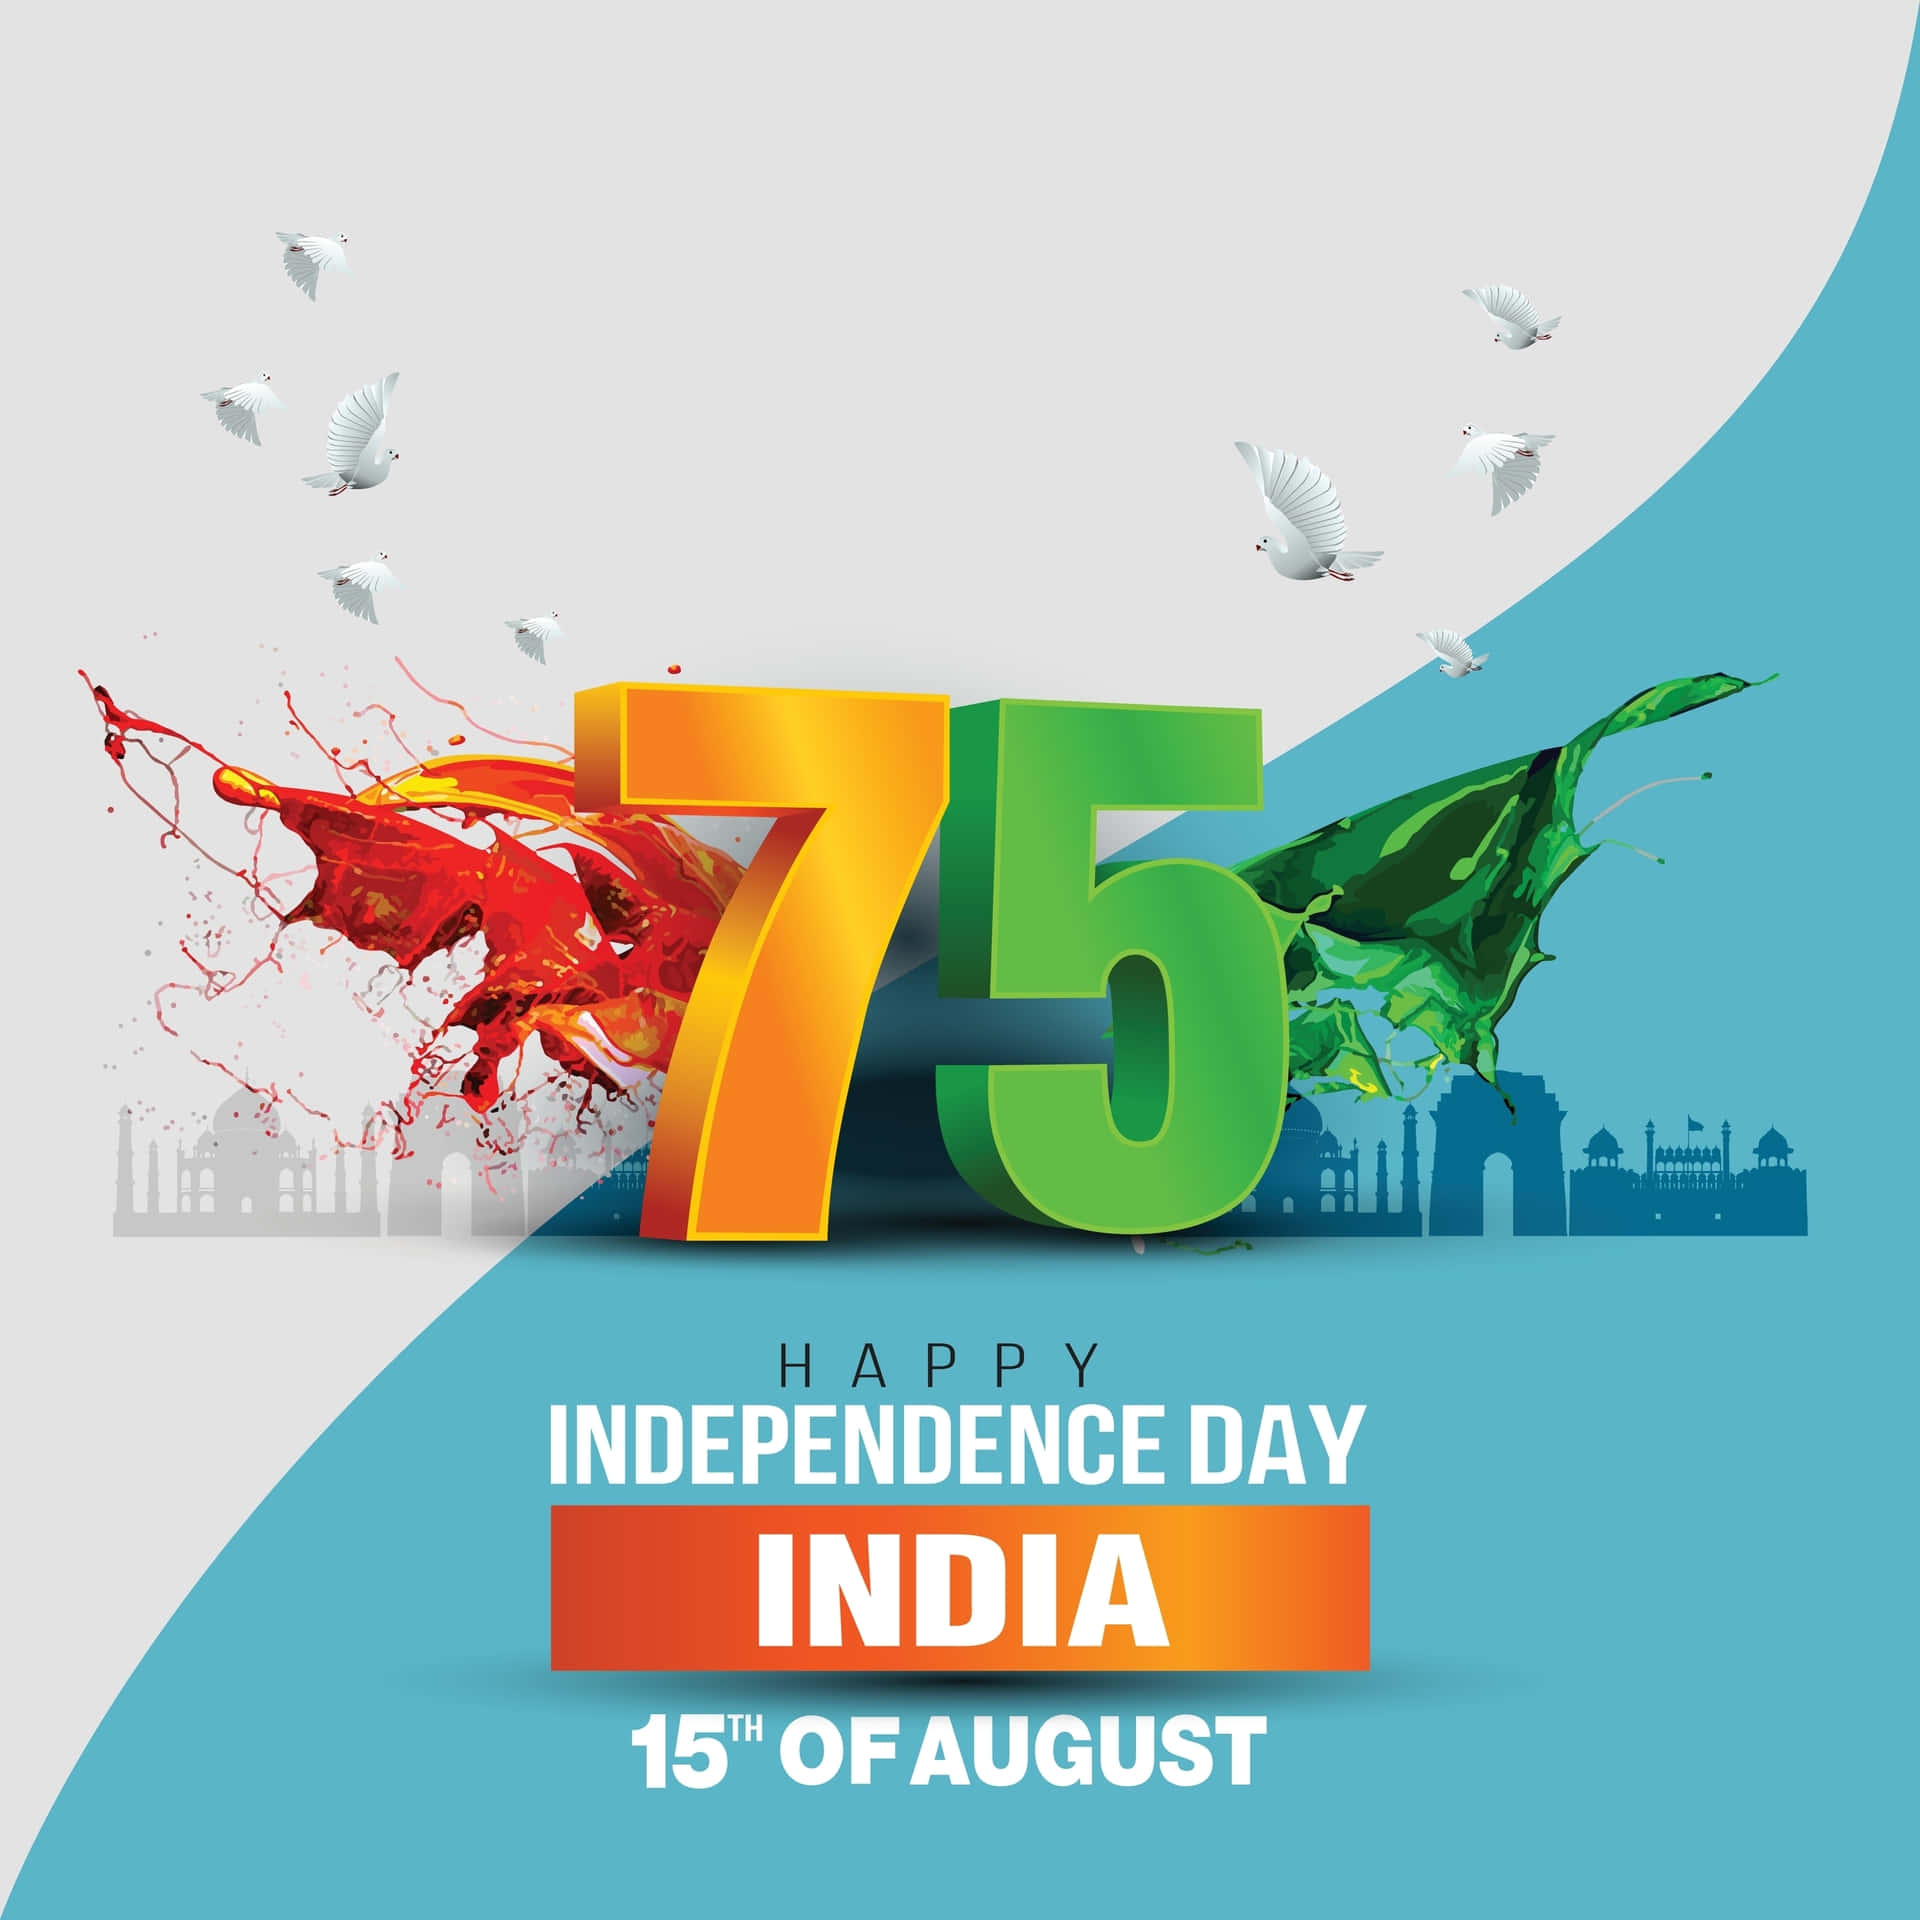 Immaginedi Auguri Per Il Giorno Dell'indipendenza Dell'india In Blu E Bianco.